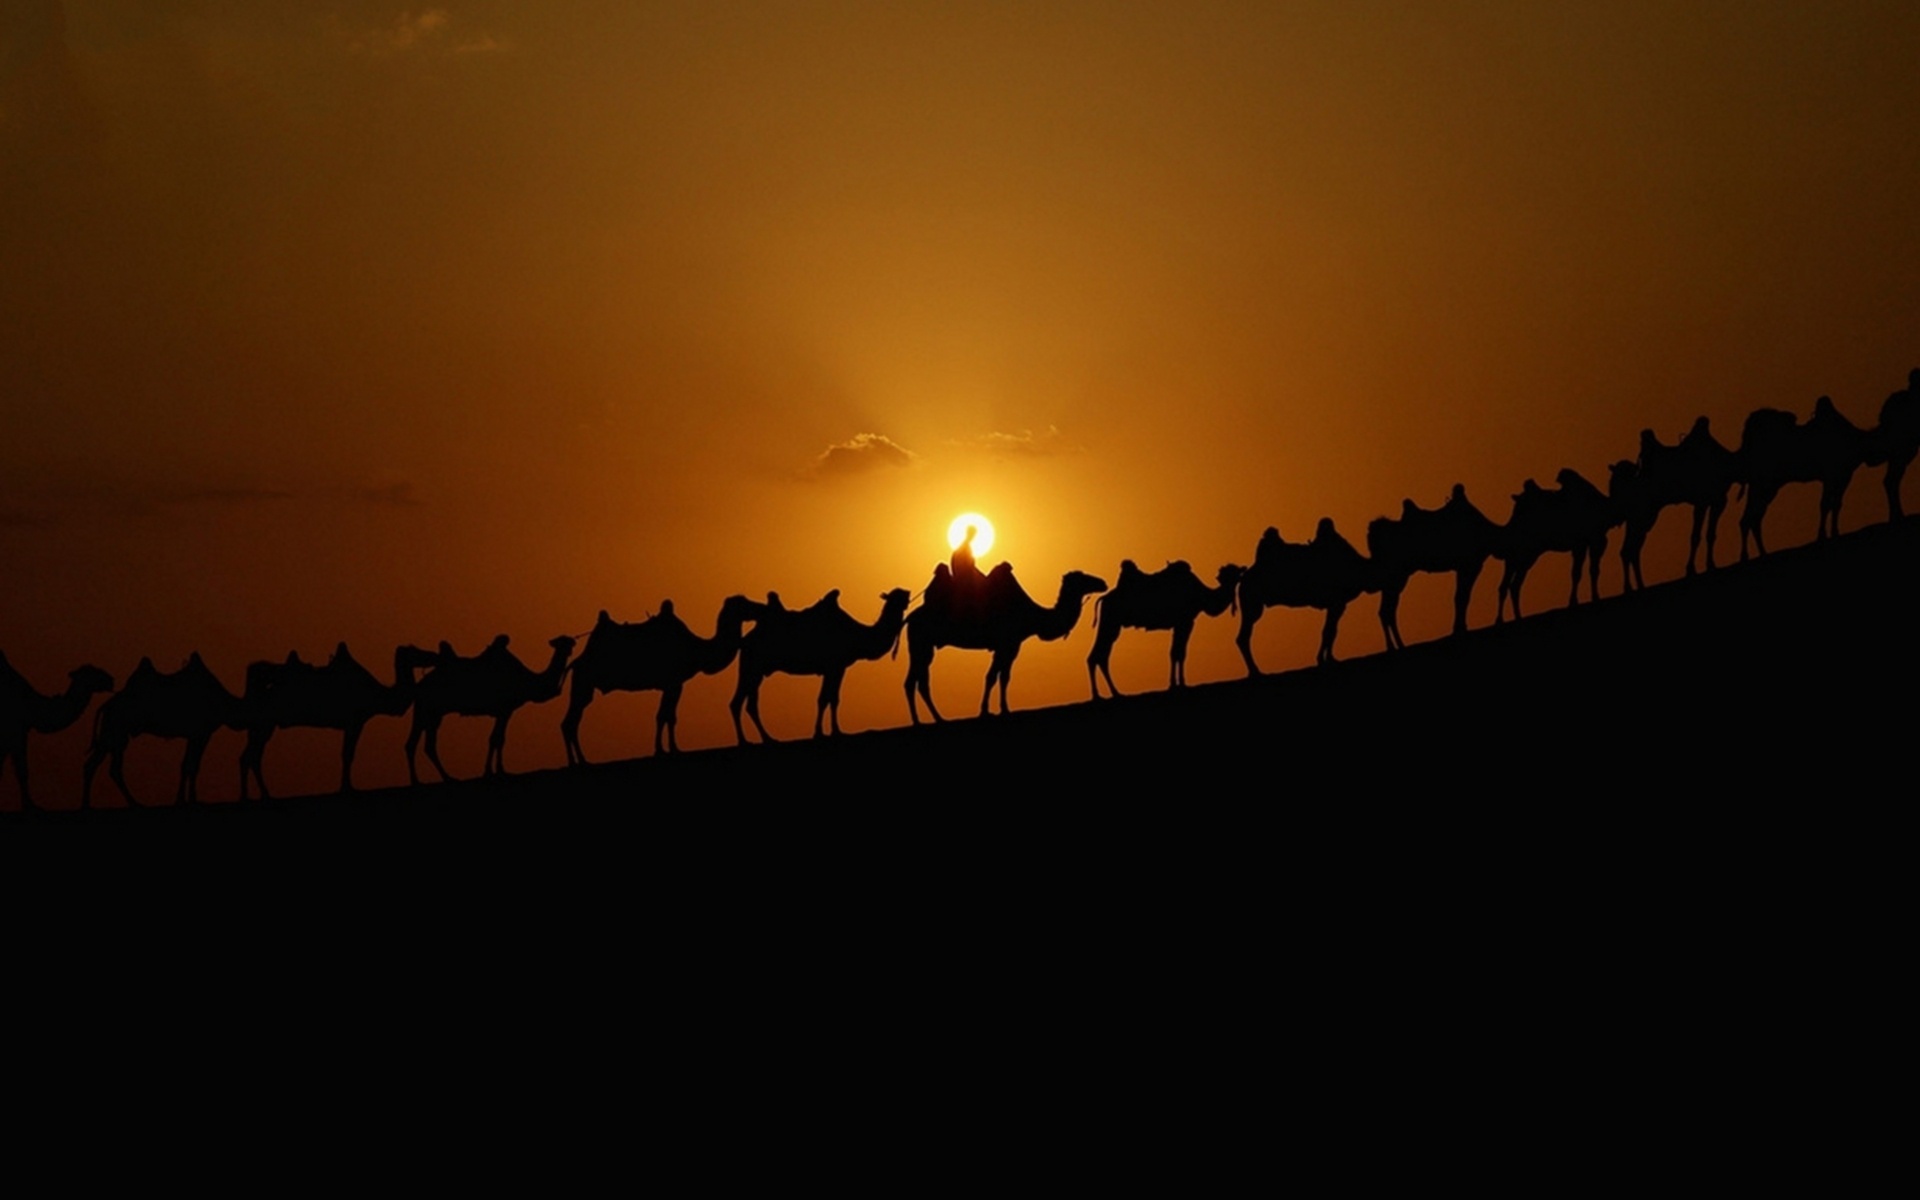 Самый караван. Картинка Караван верблюдов в пустыне. Верблюд в пустыне.